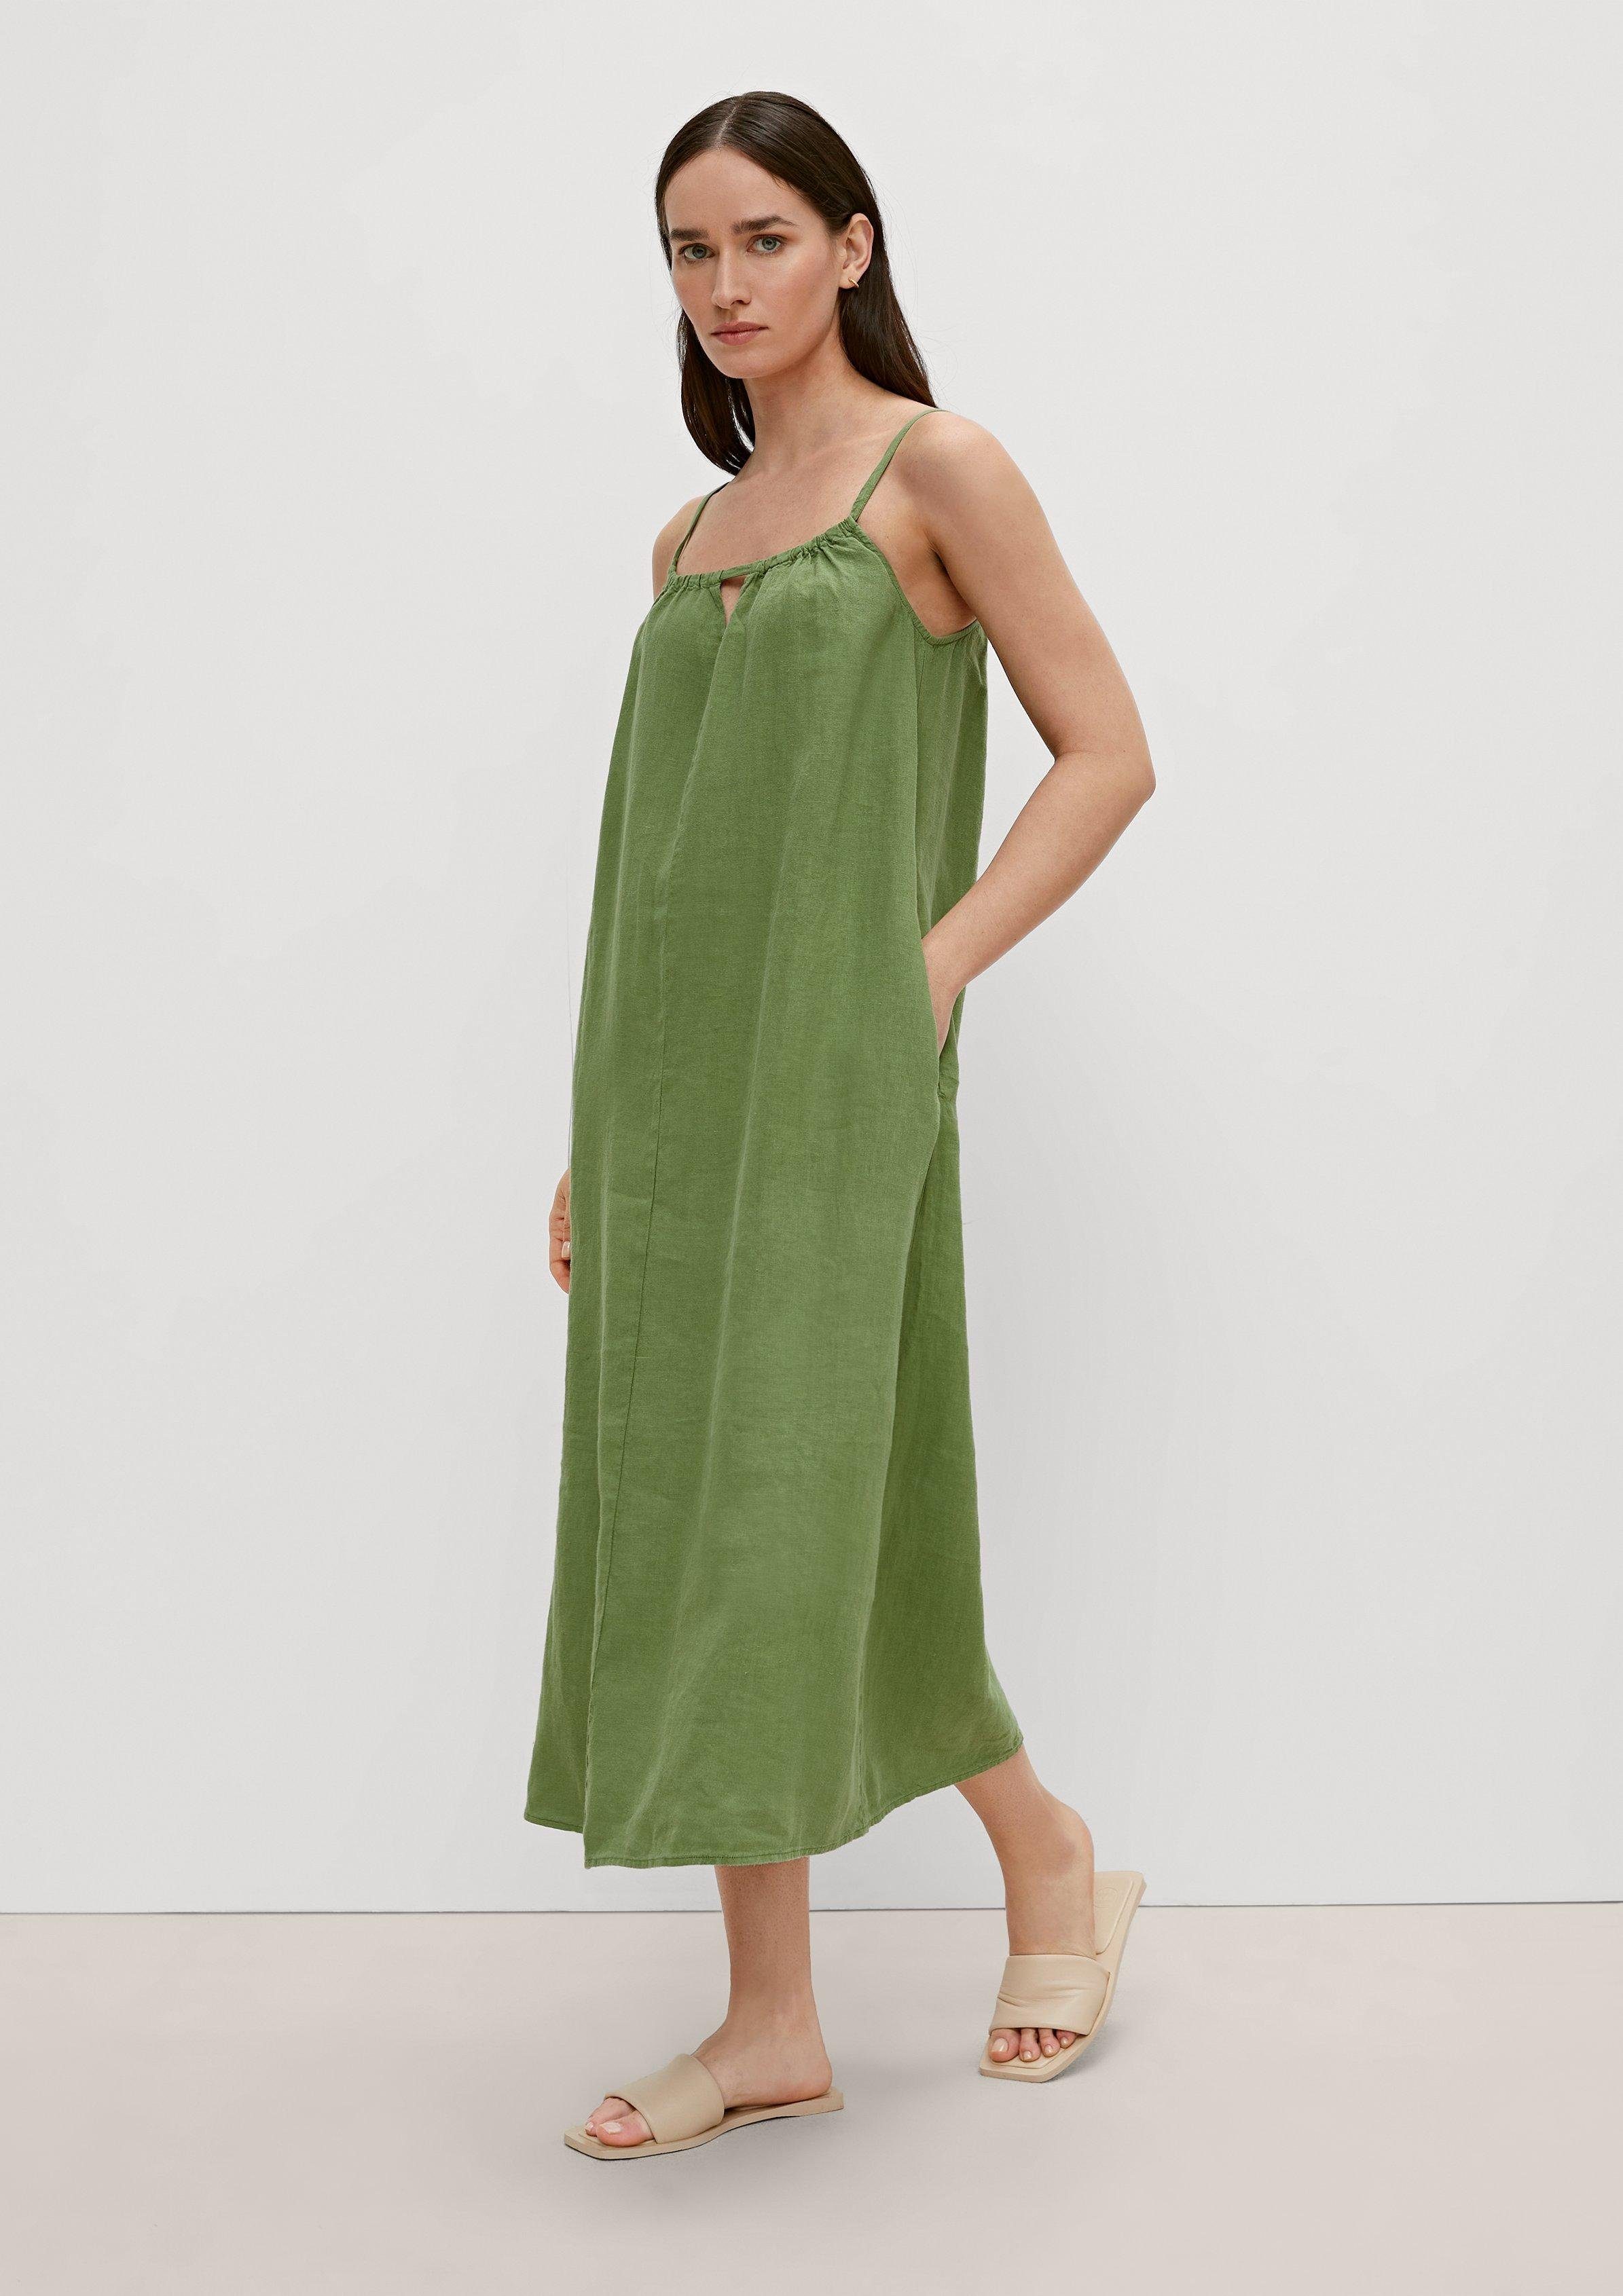 Schleife Minikleid green aus Leinen Comma bright Kleid